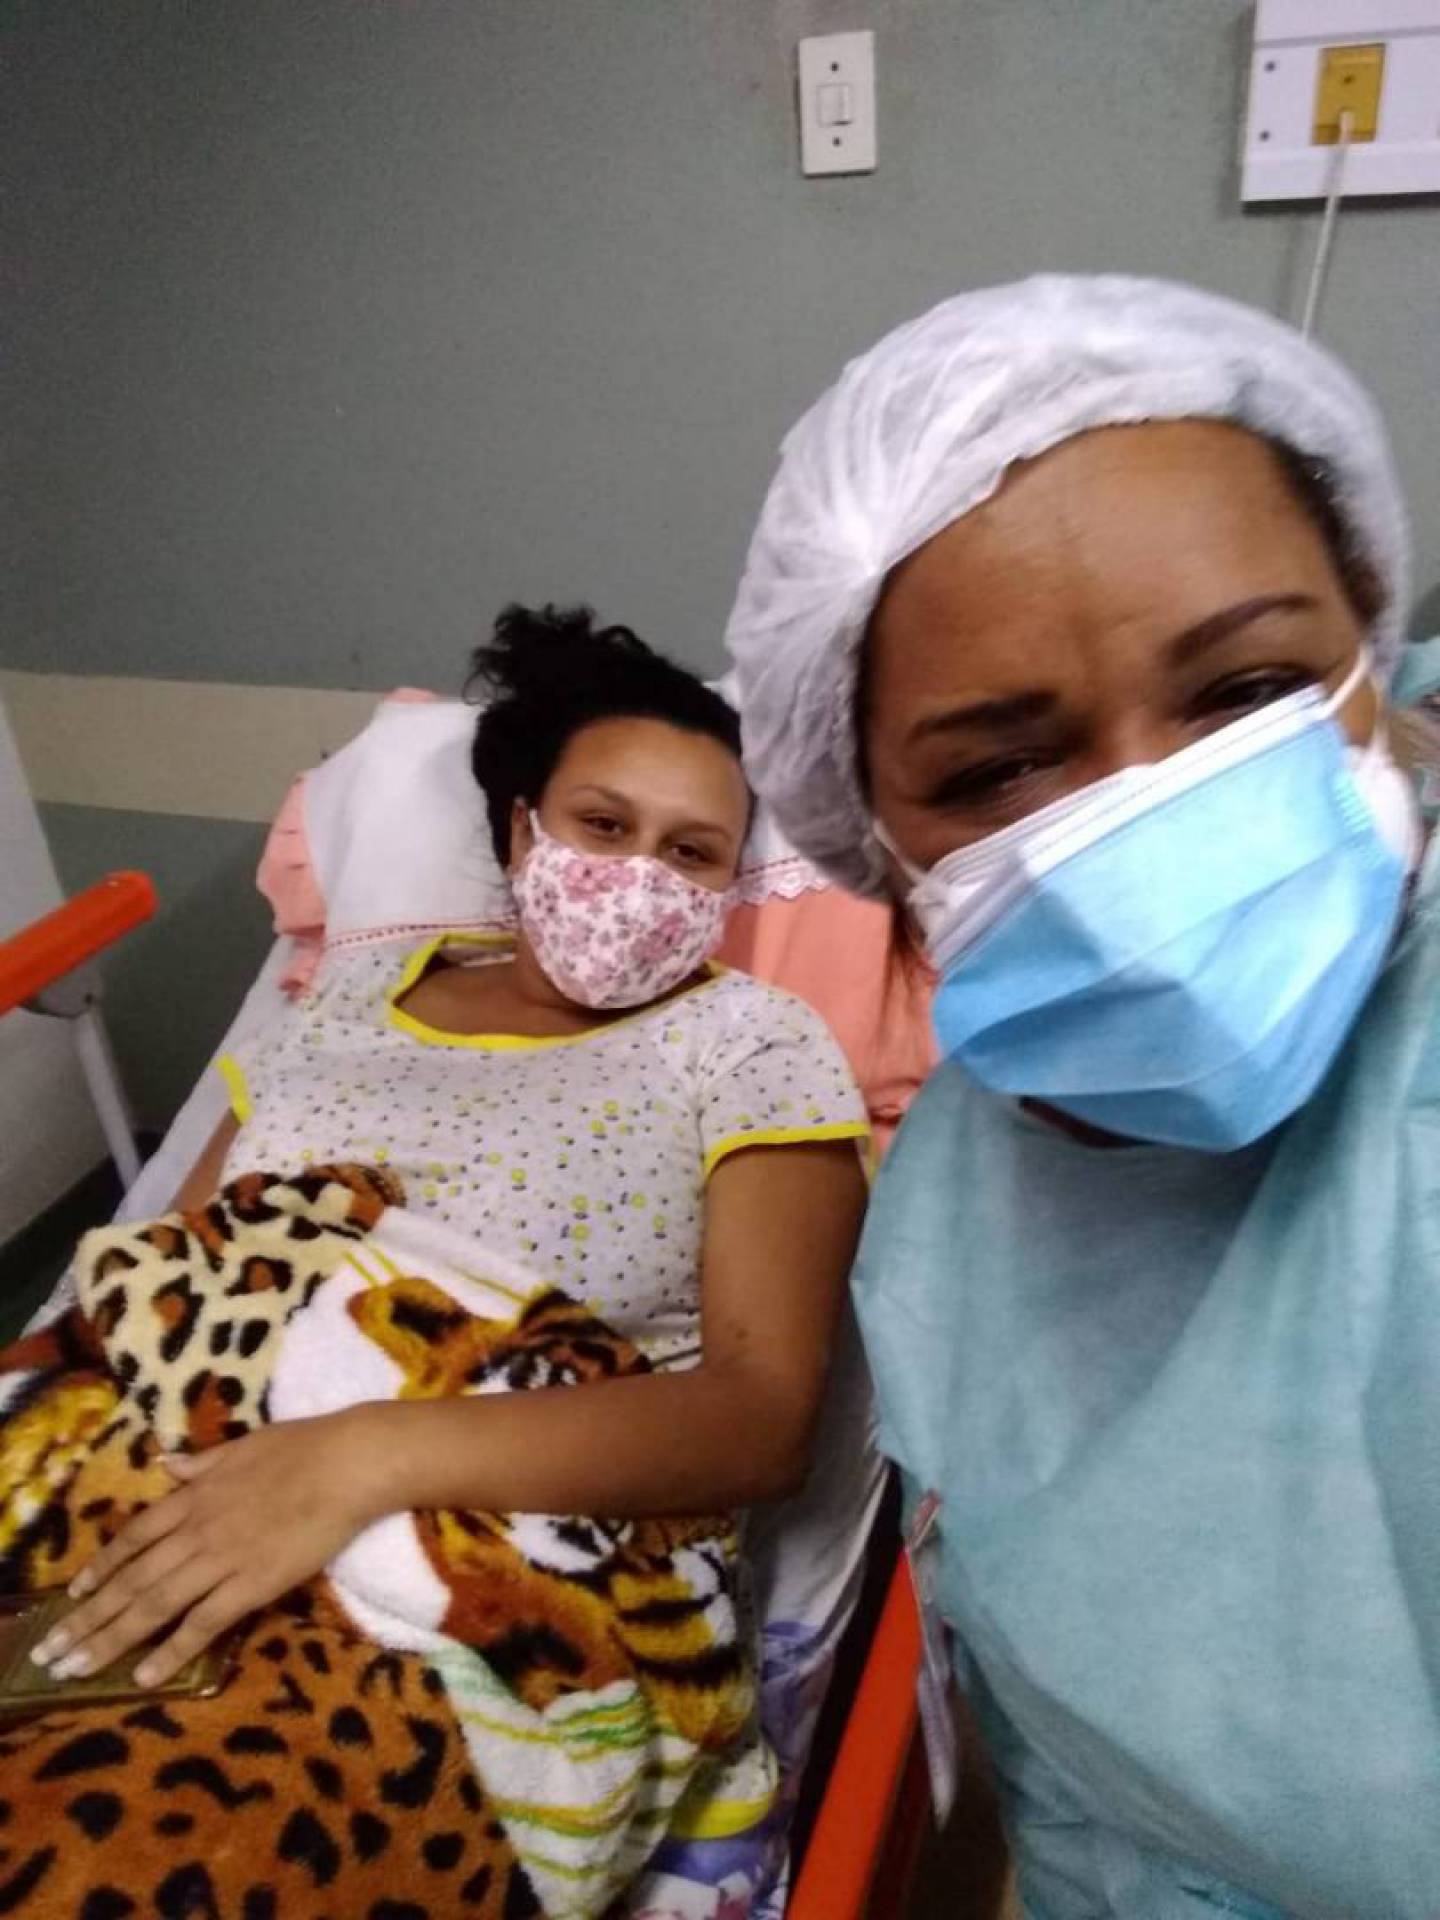 Após meses de espera, jovem consegue fazer cirurgia de vesícula: 'Alívio' |  Duque de Caxias | O Dia